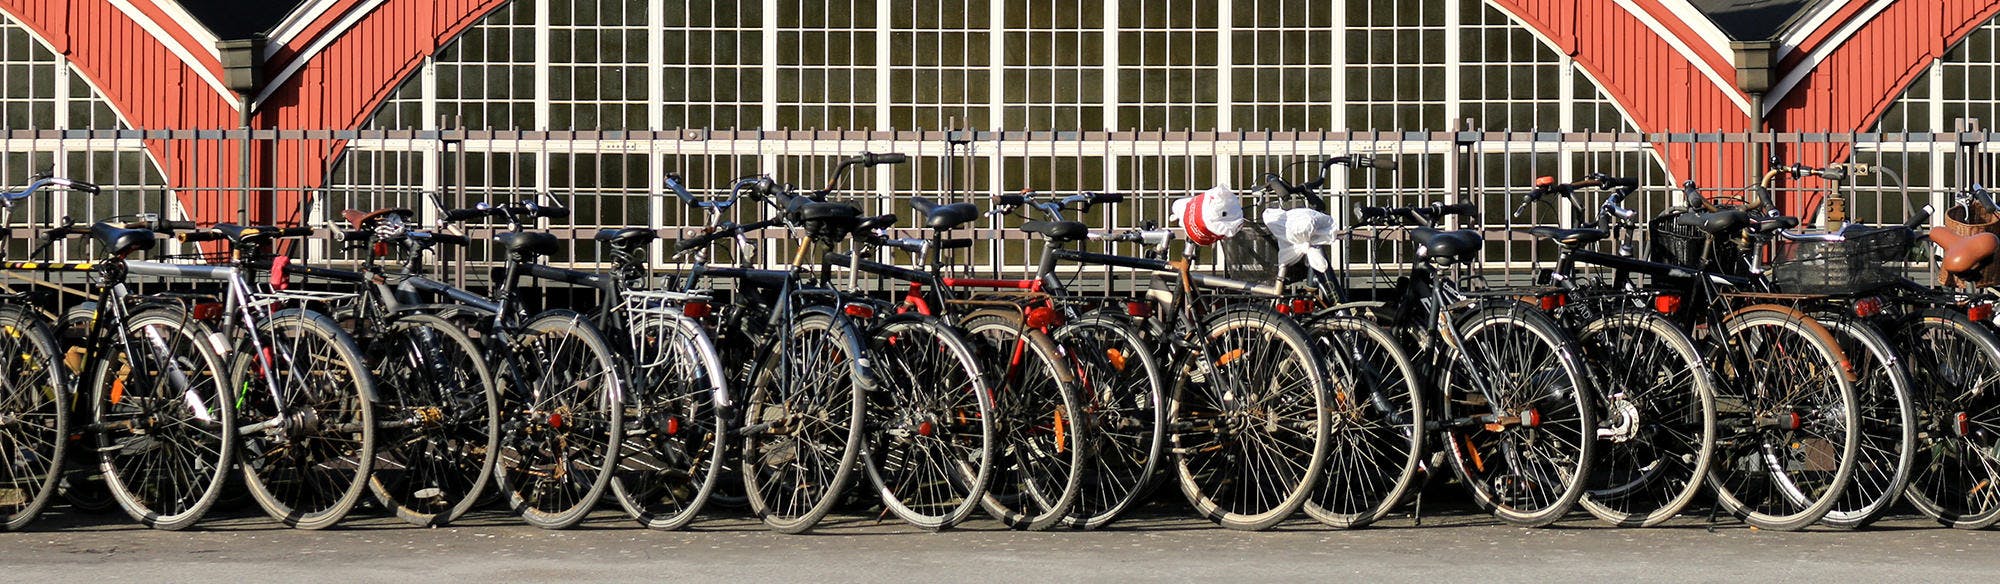 Copenaghen città sostenibile a due ruote